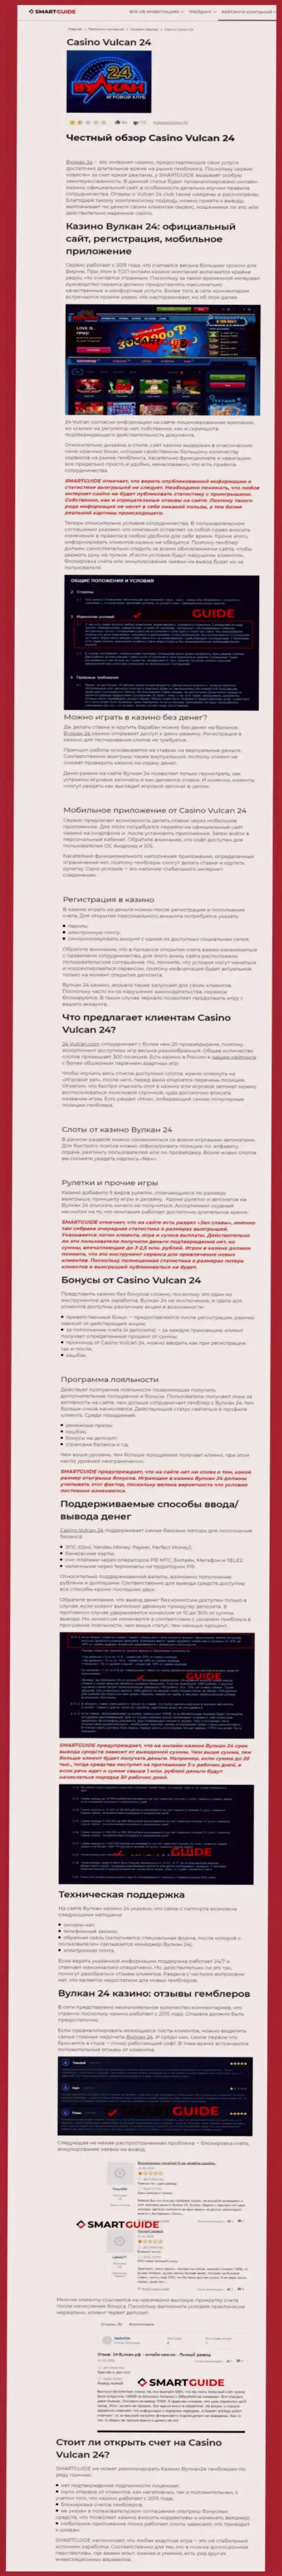 Вулкан-24 Ком - это организация, которая зарабатывает на воровстве денежных вкладов реальных клиентов (обзор)